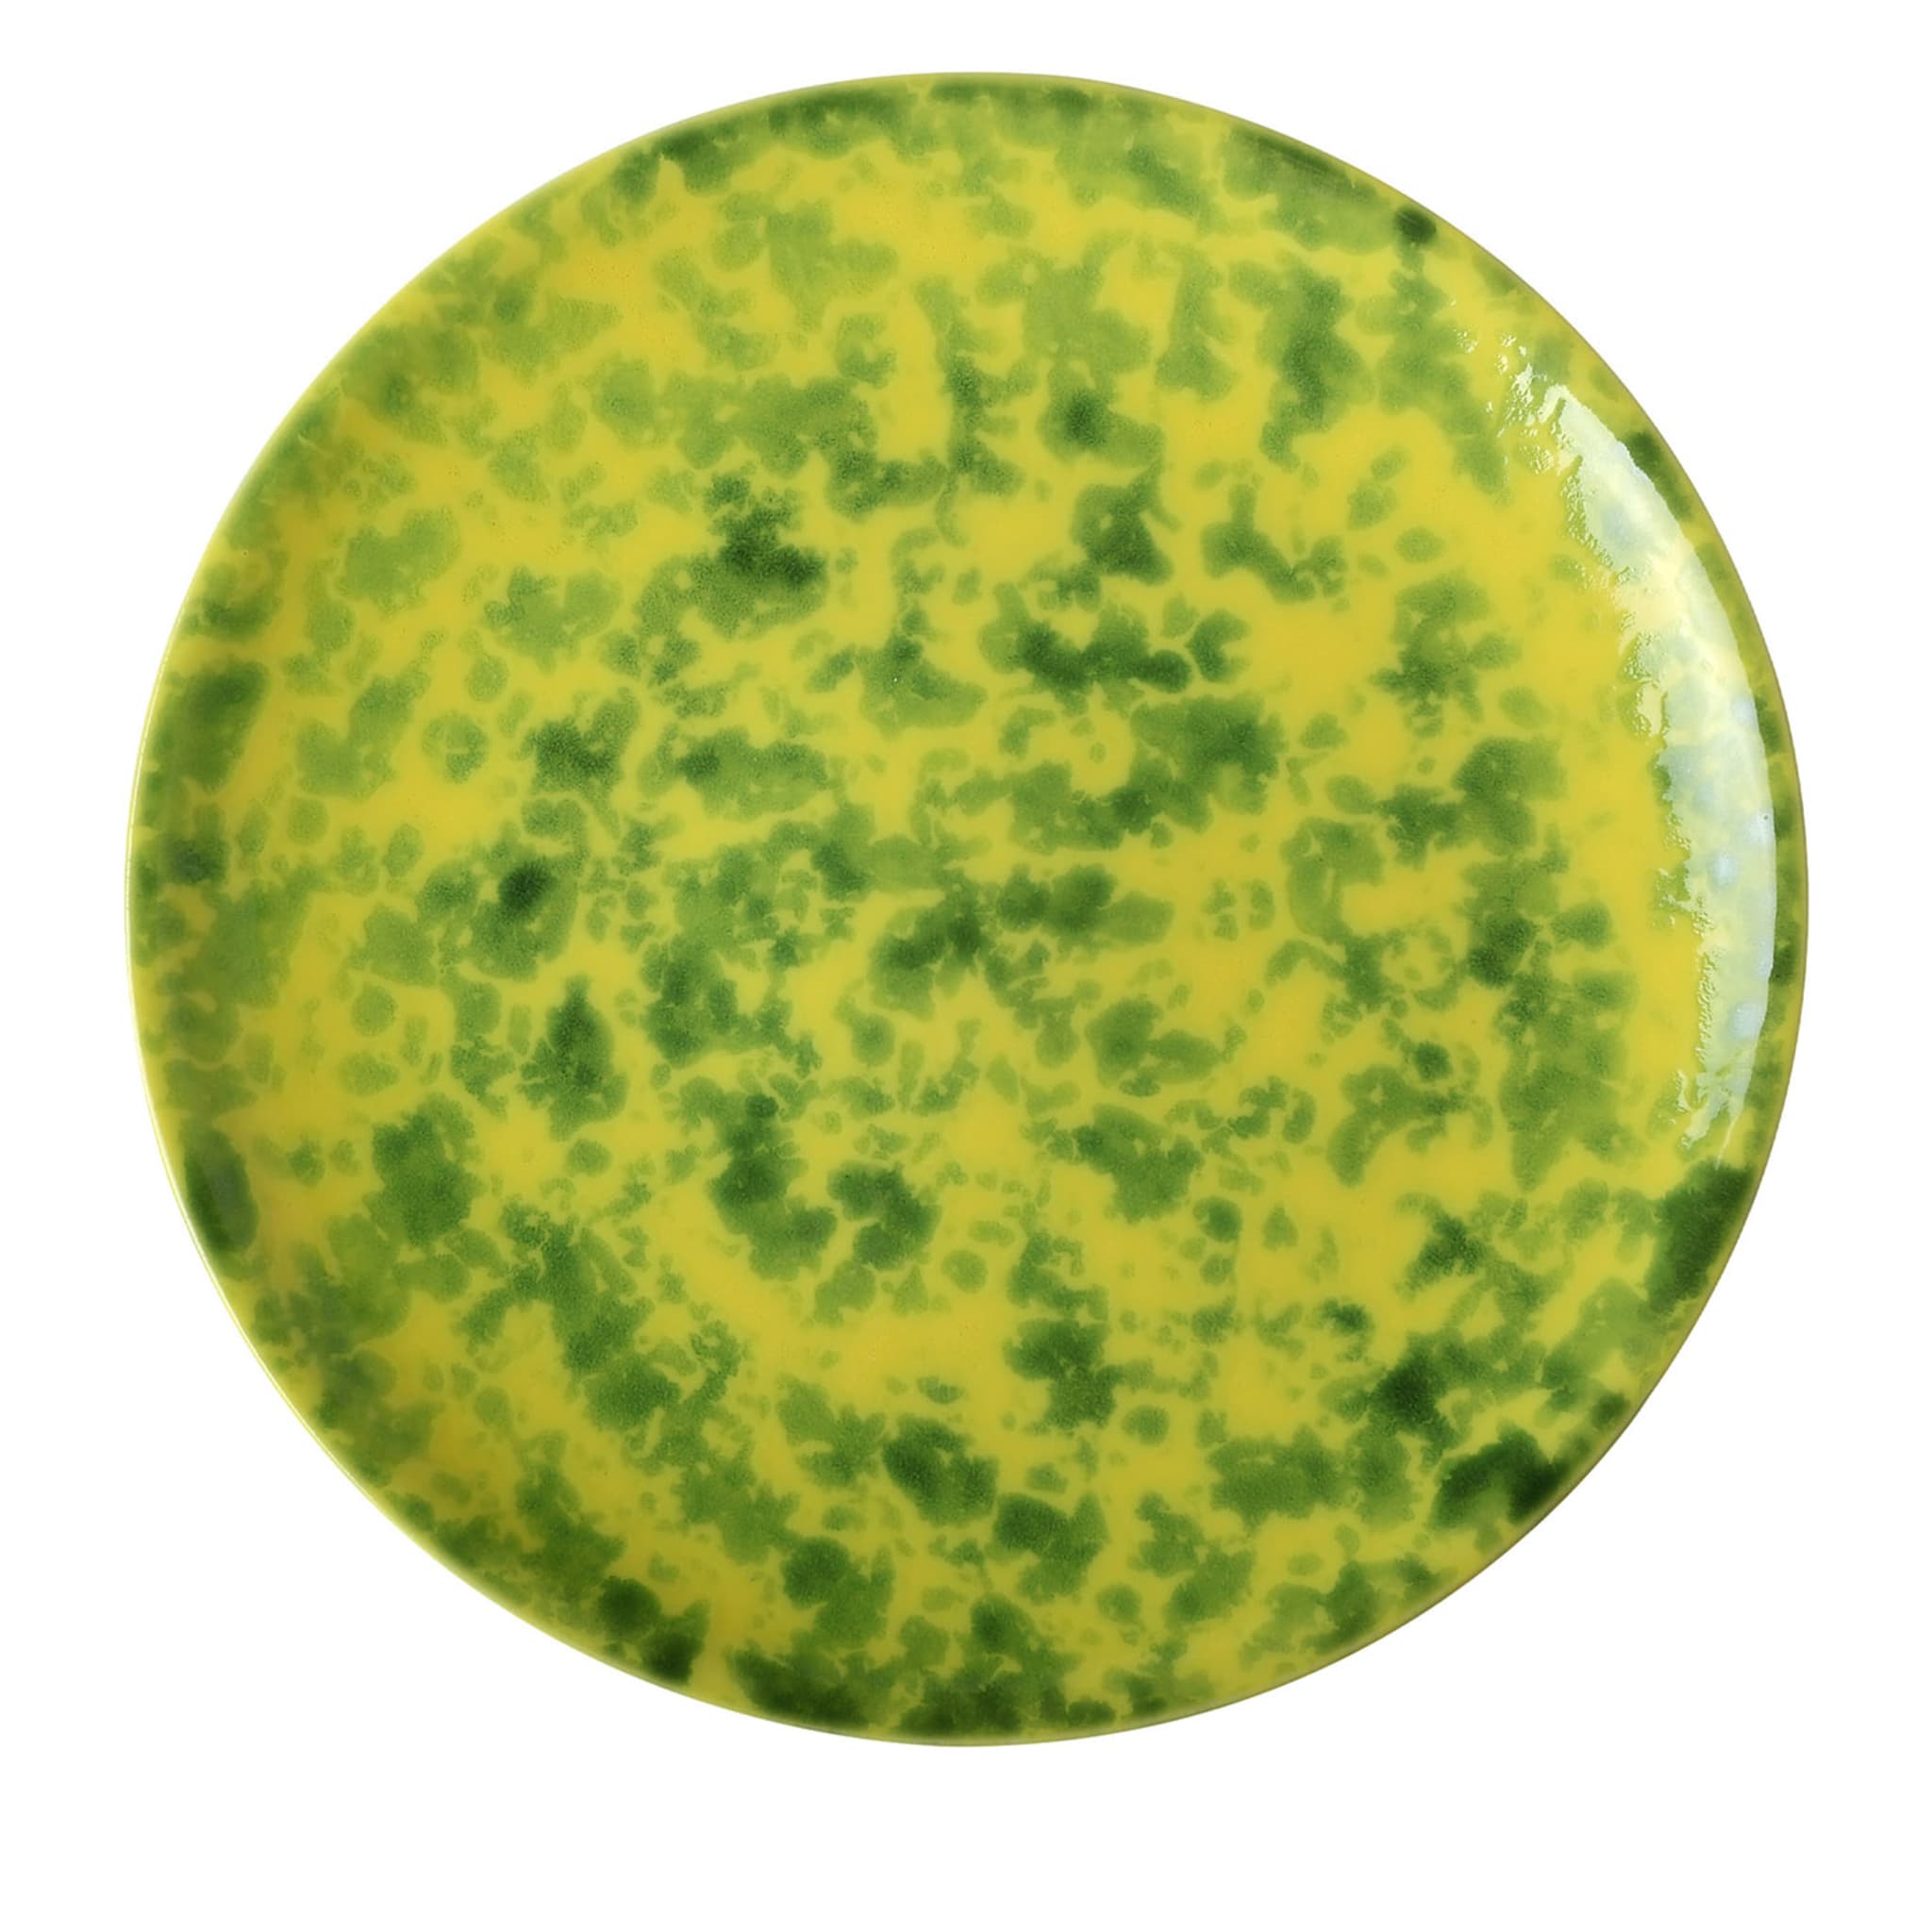 Limoni Runder grün-melierter gelber Speiseteller - Hauptansicht